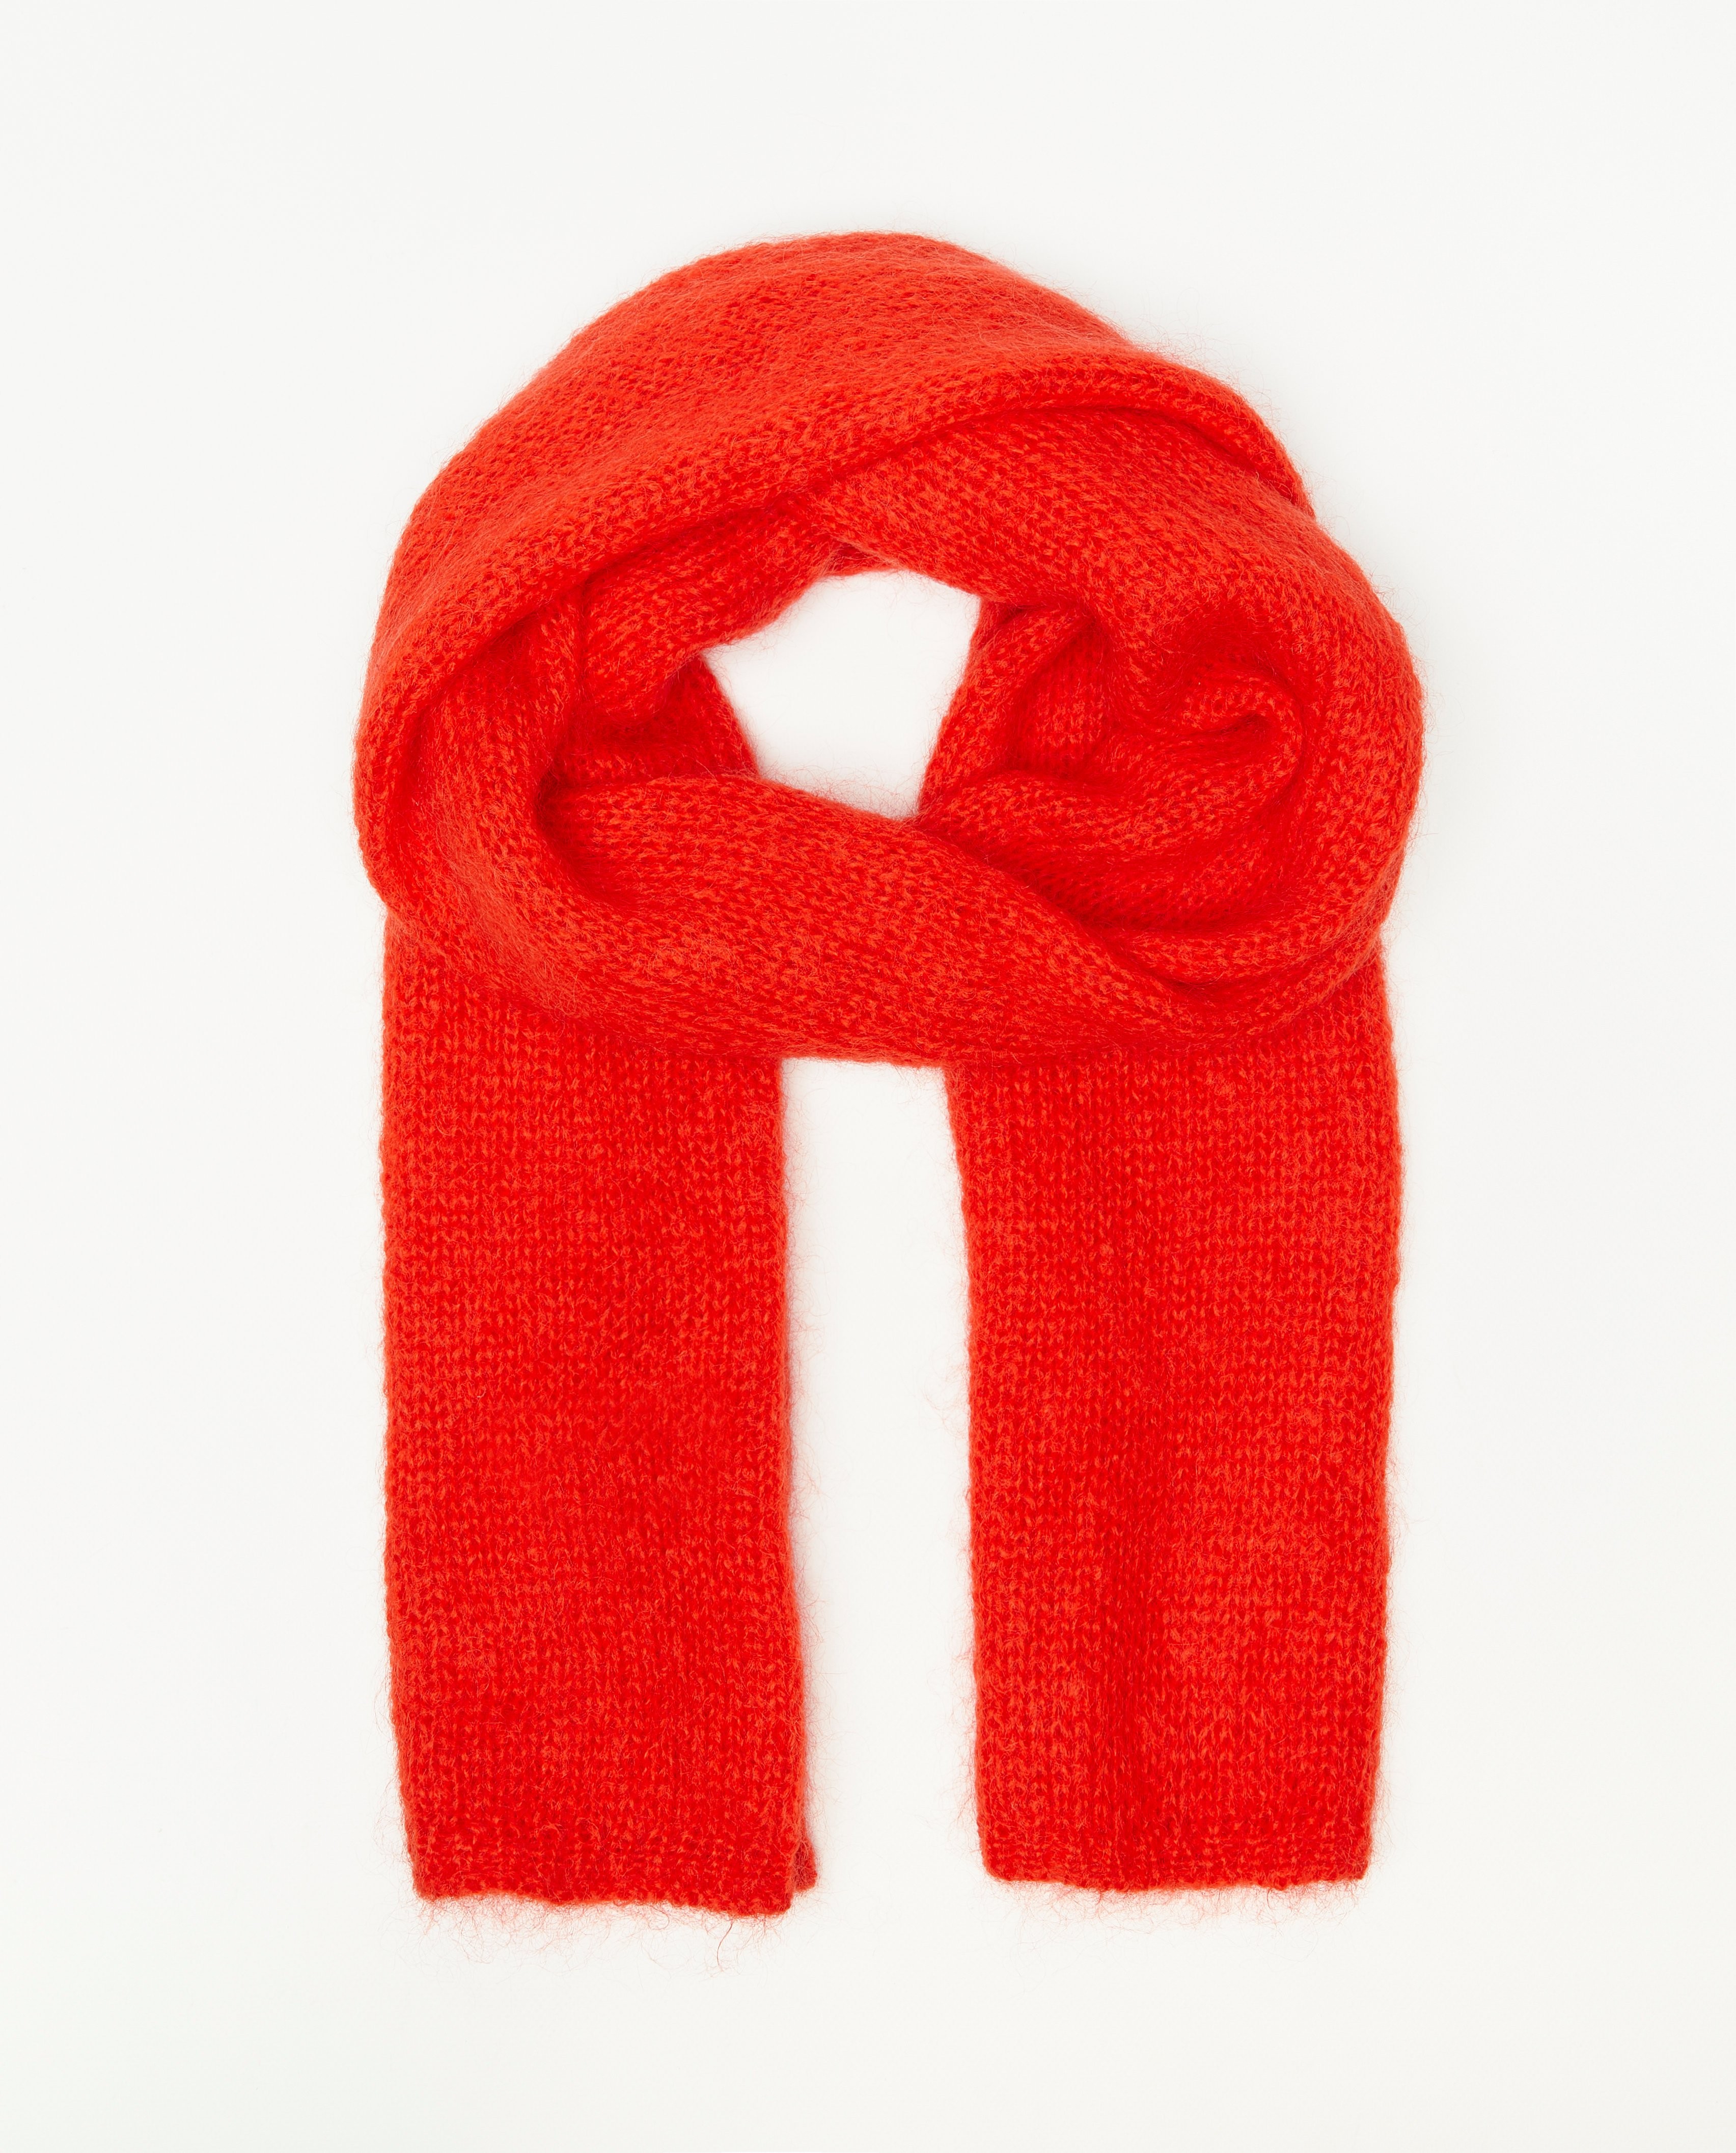 Breigoed - Rode gebreide sjaal